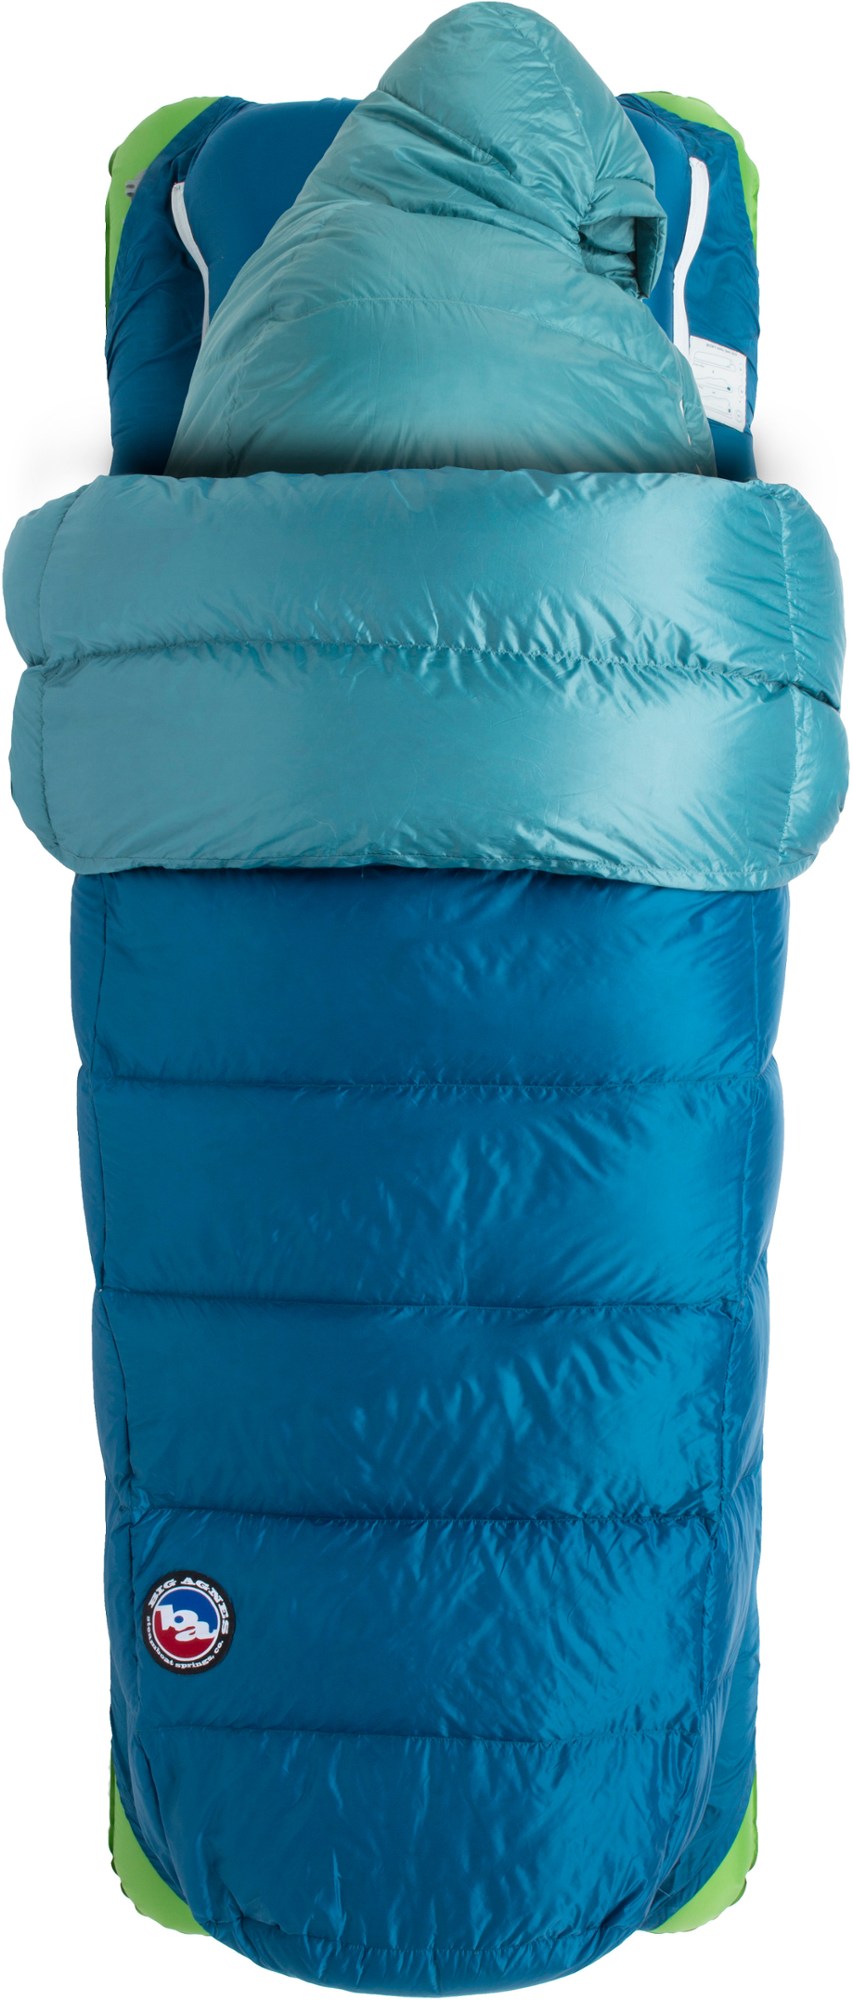 двойной спальный мешок dream island синтетика 20f big agnes светло голубой оранжевый Спальный мешок Roxy Ann 3N1 30 - женский Big Agnes, синий